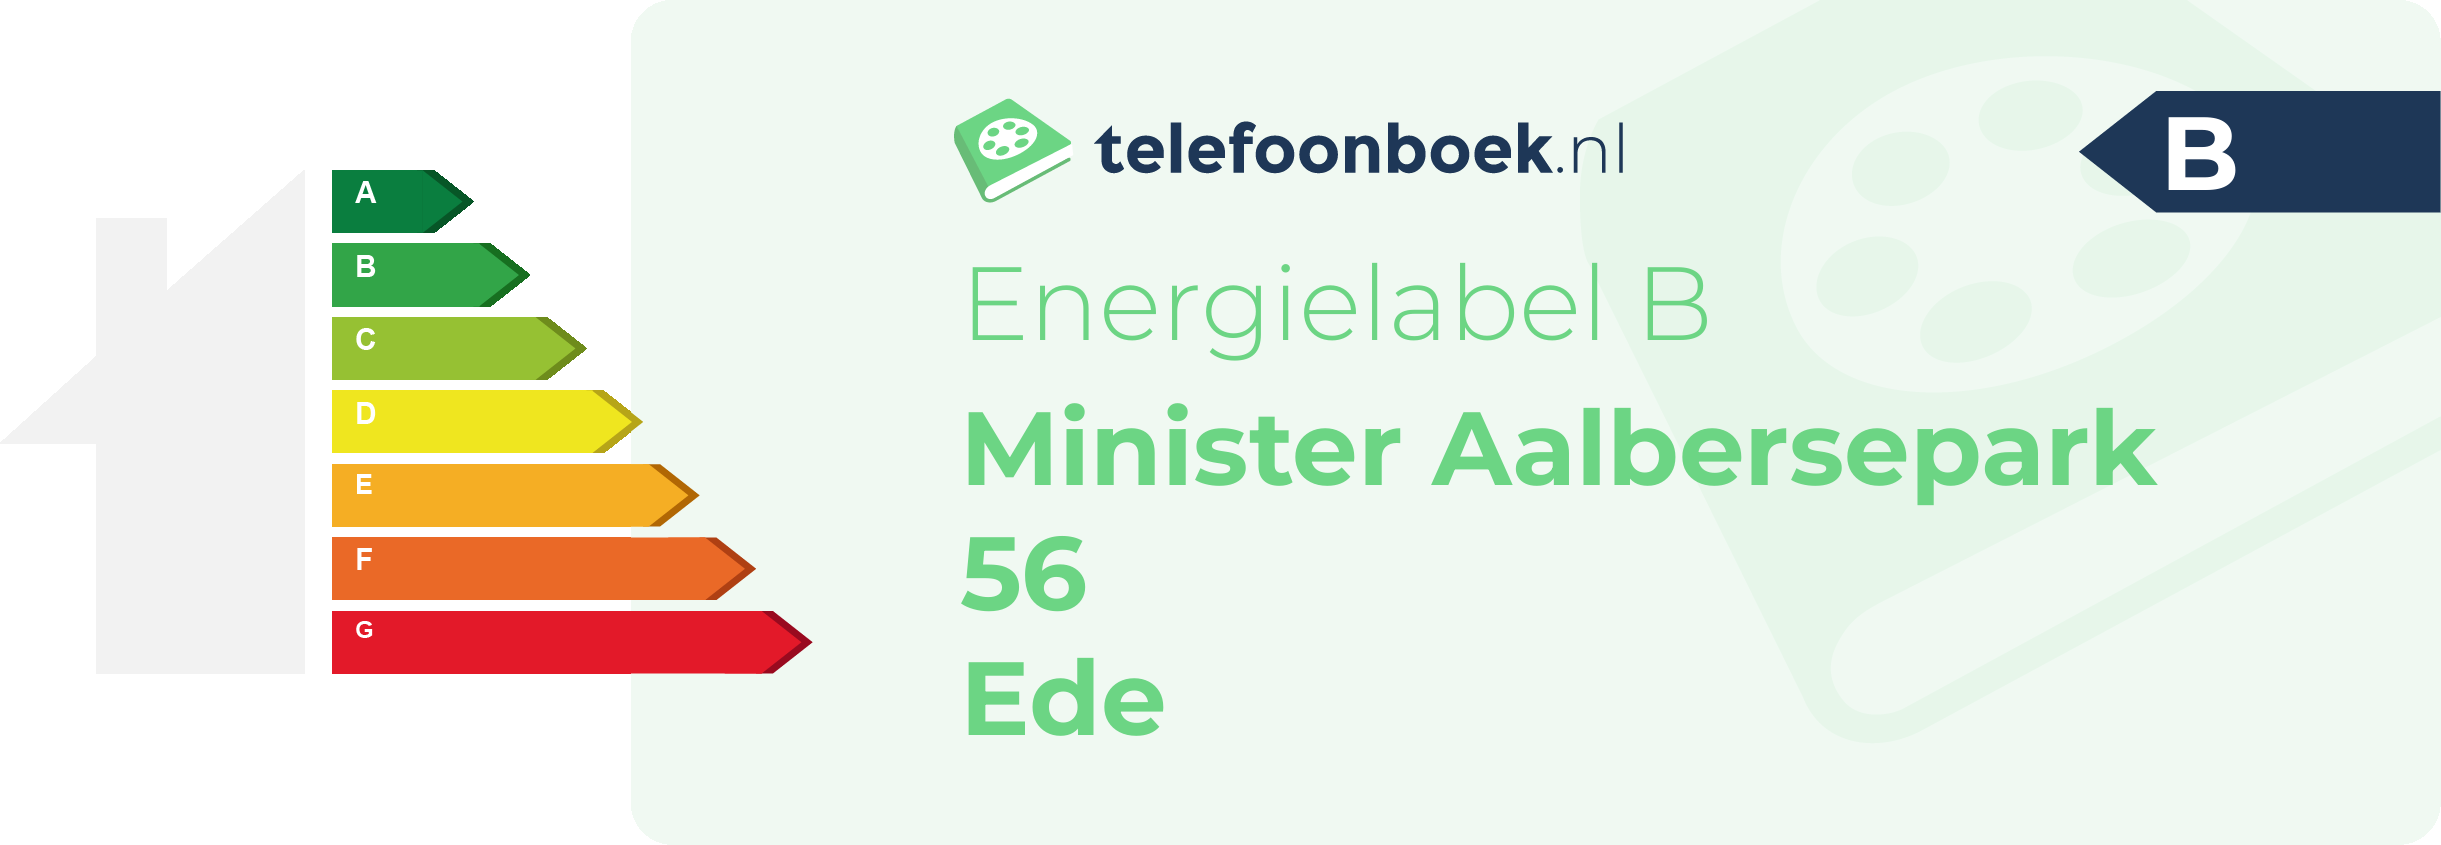 Energielabel Minister Aalbersepark 56 Ede